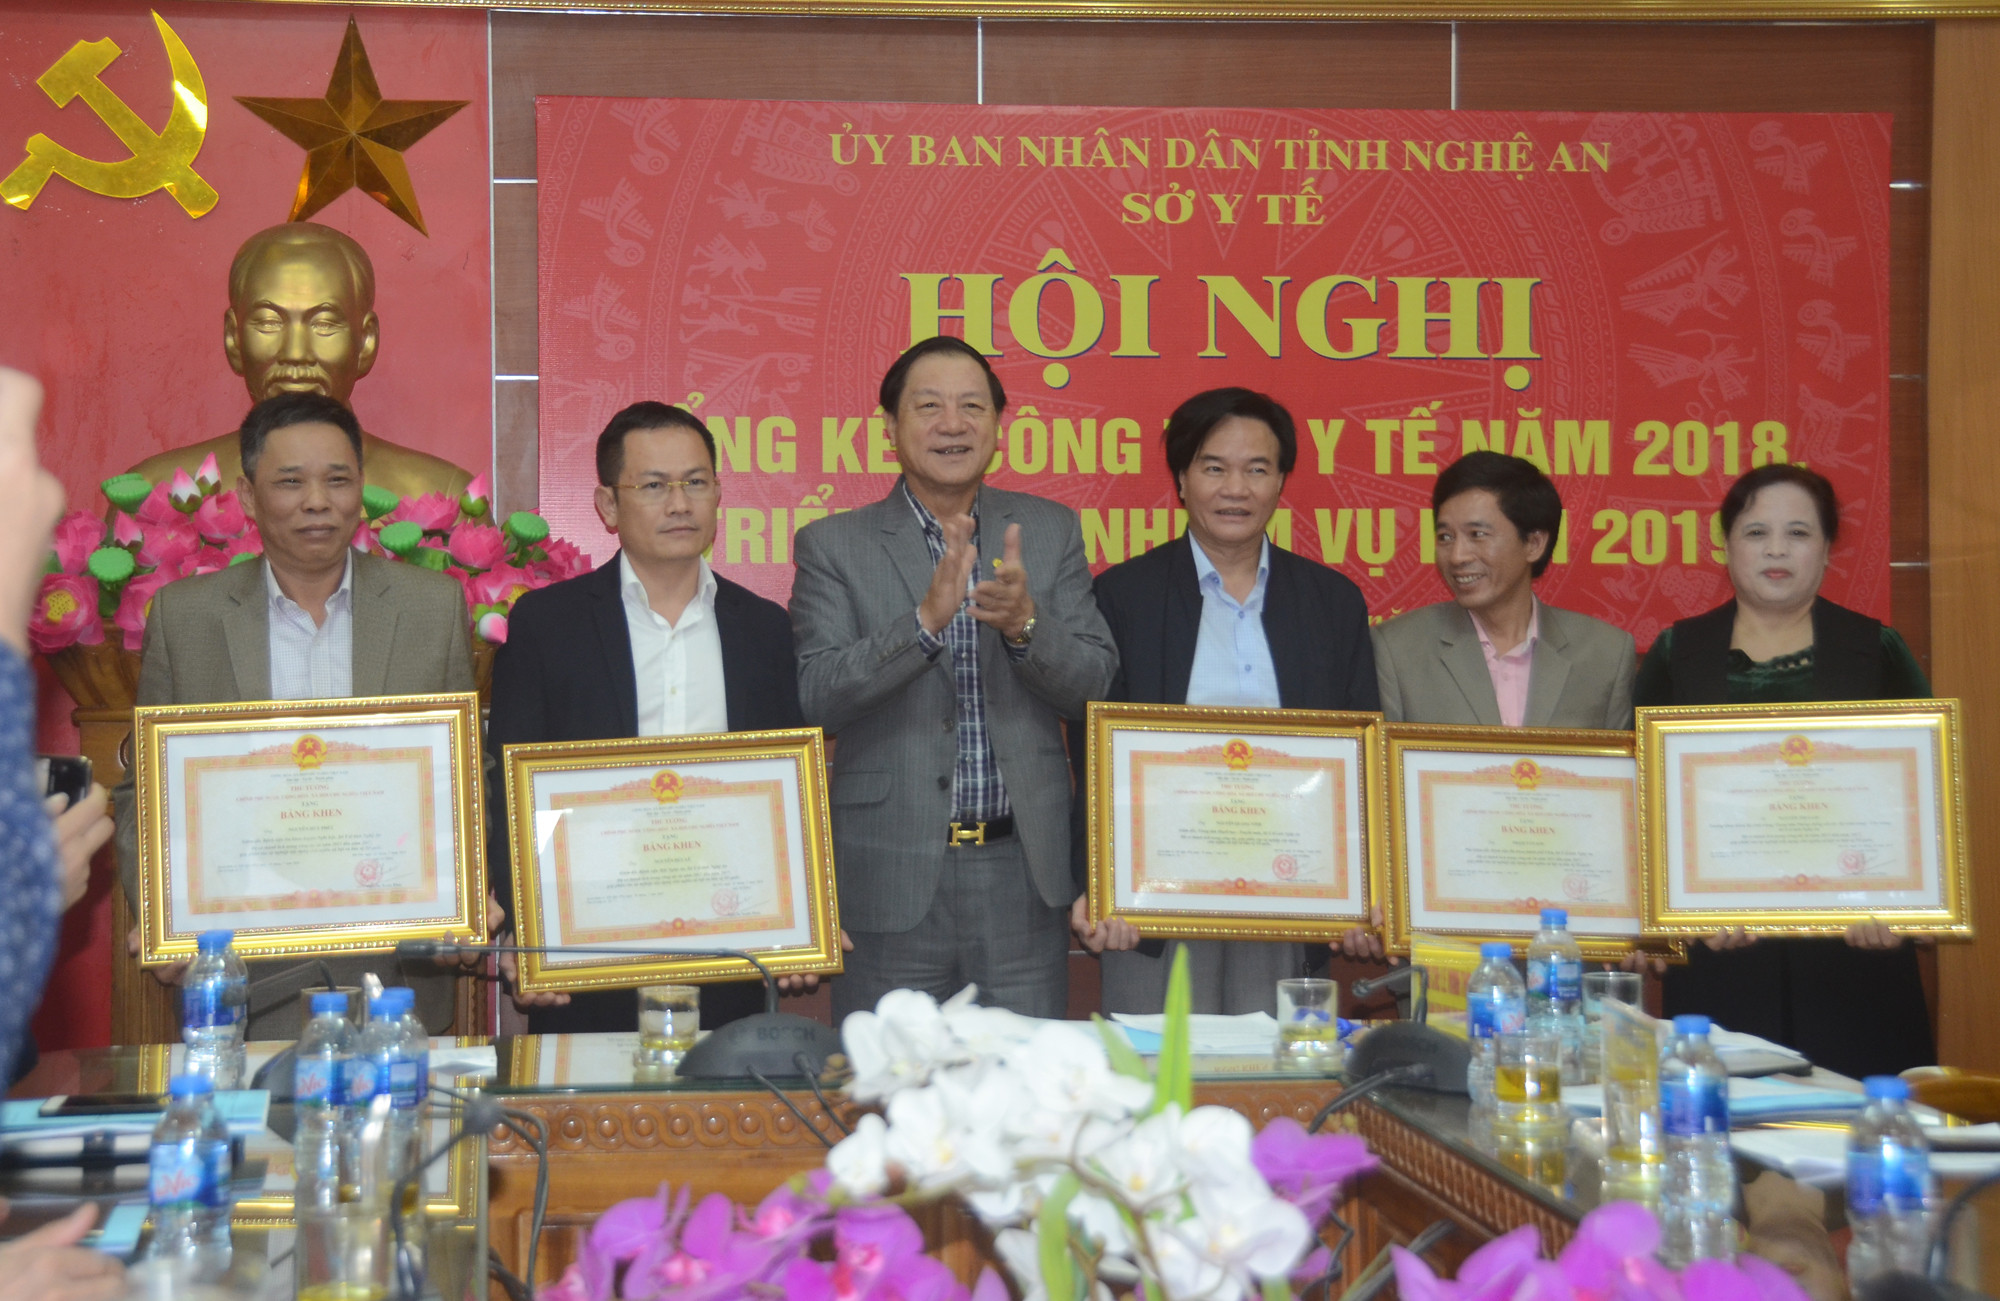 Đồng chí Lê Minh Thông trao Bằng khen của Thủ tướng Chính Phủ cho 8 bác sĩ tỉnh Nghệ An. Ảnh: Thành Chung